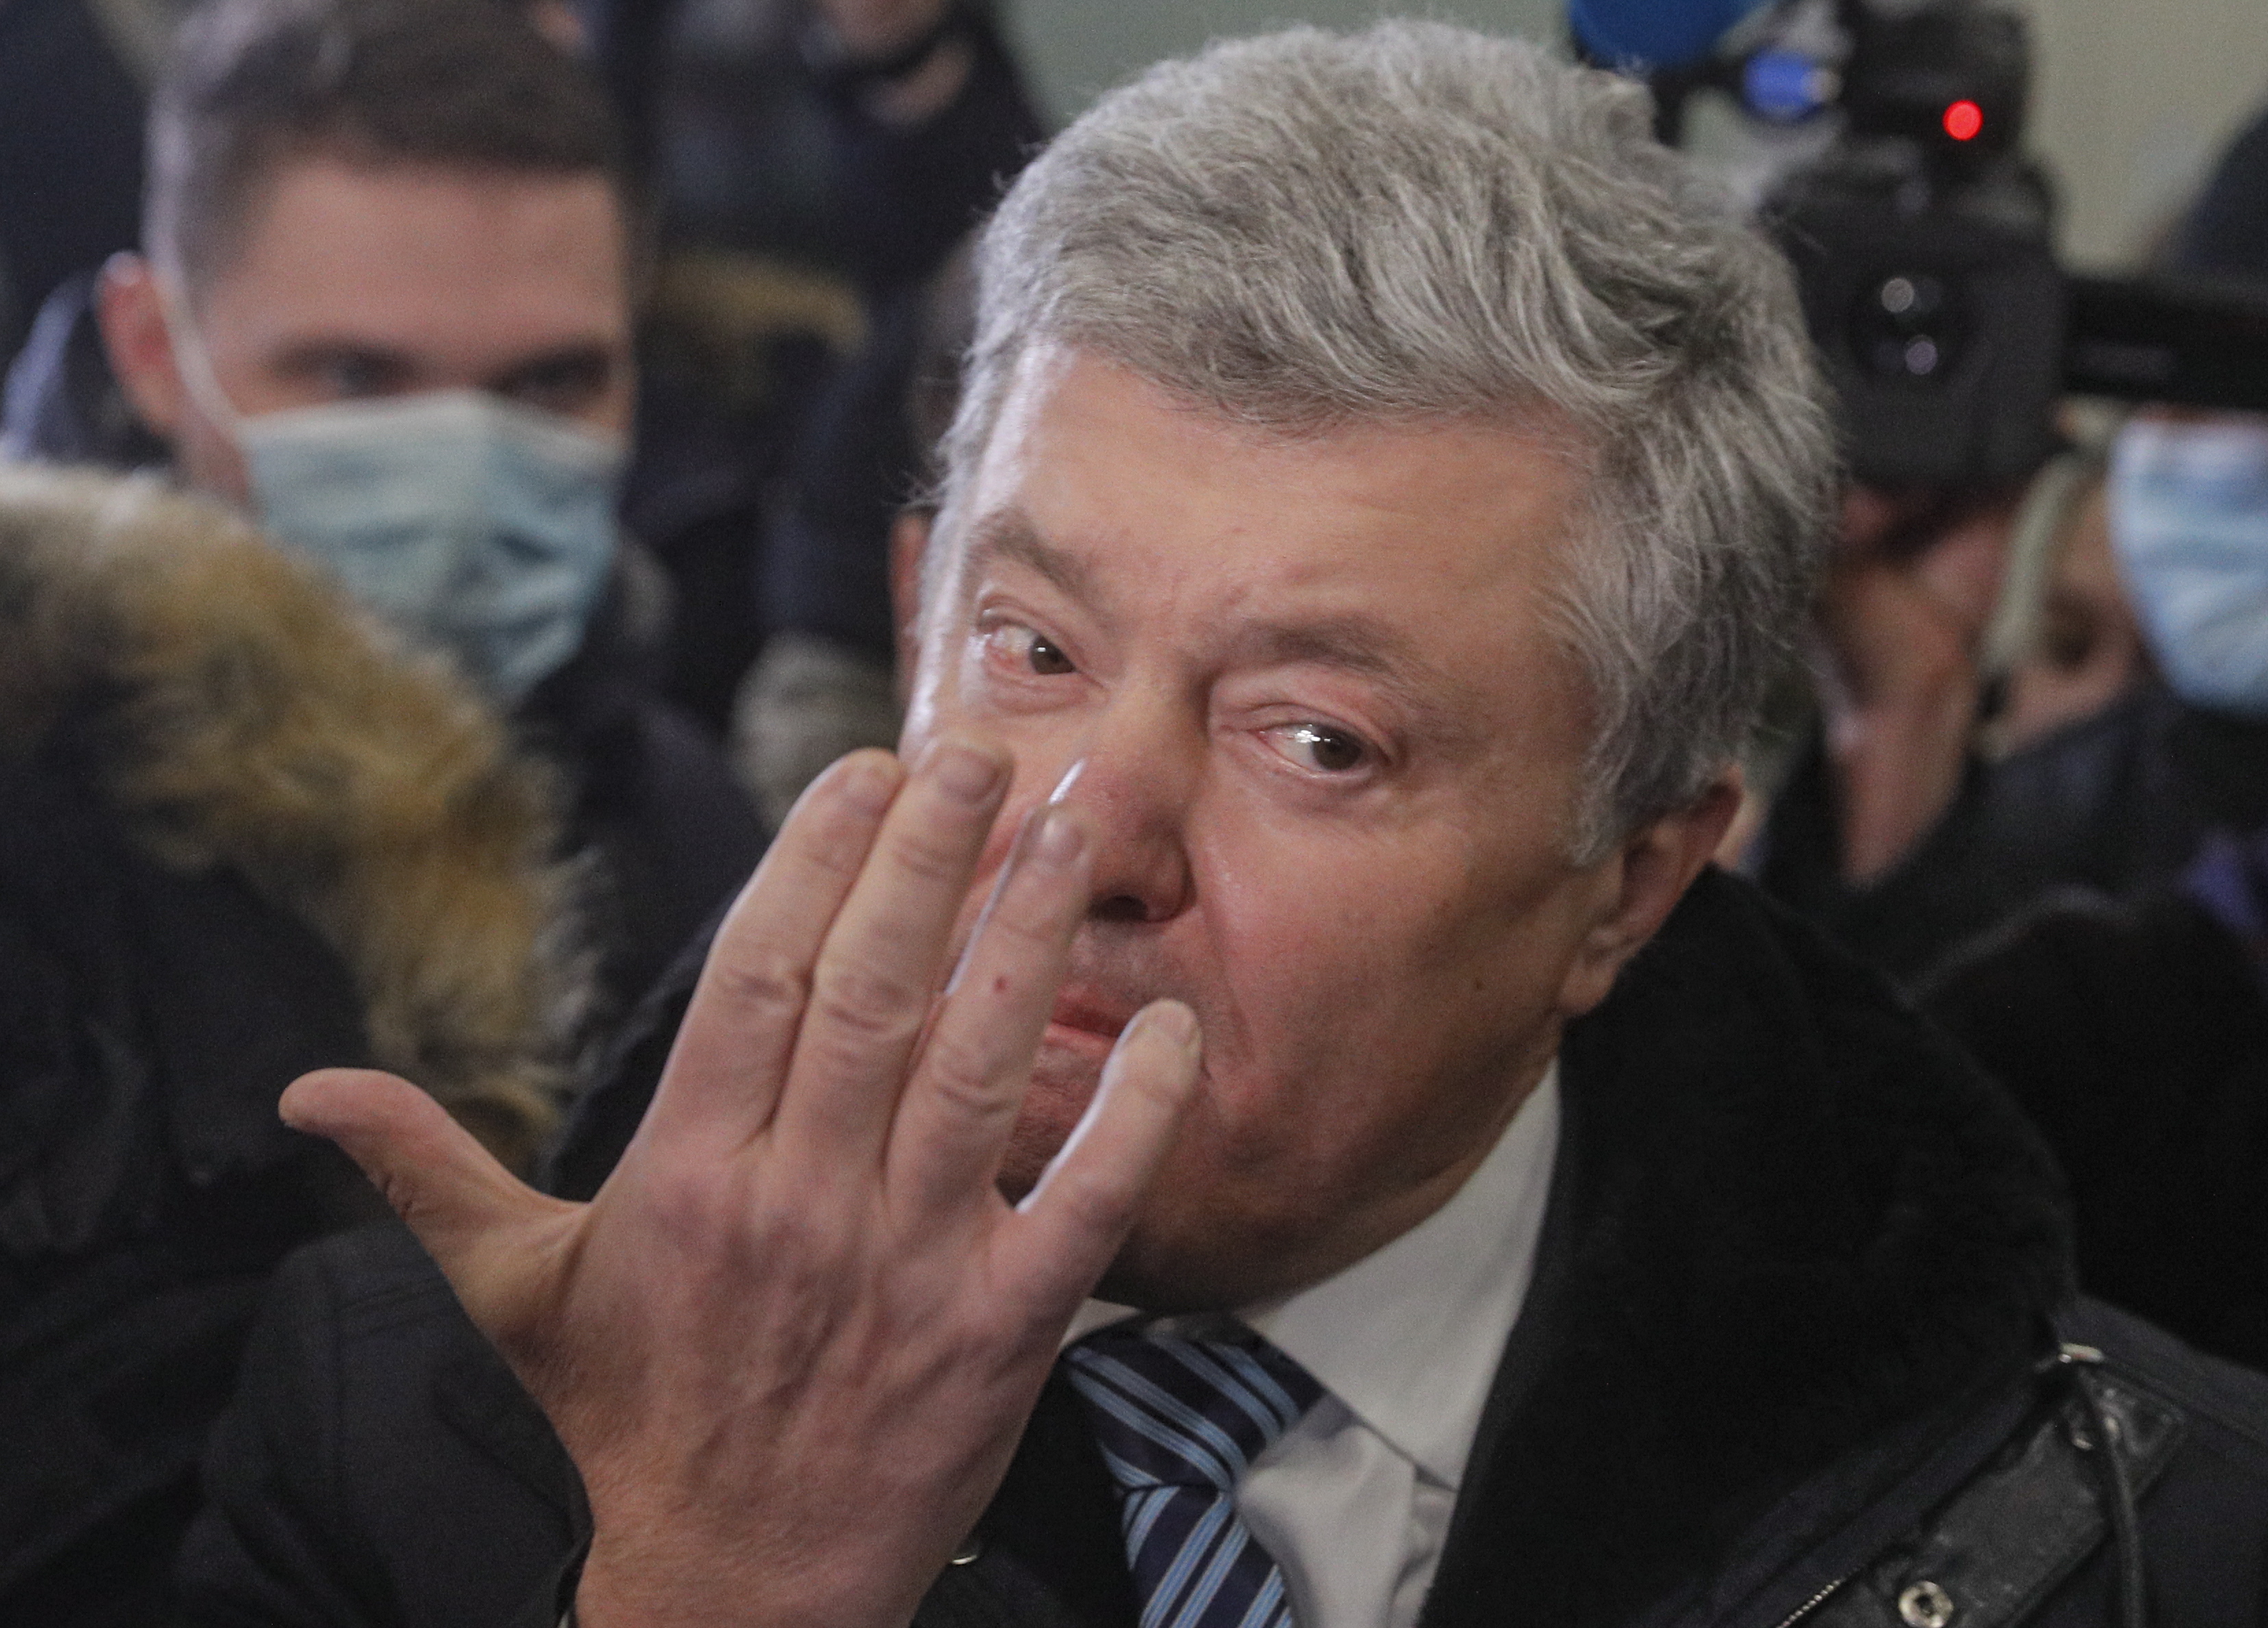 Анкета экс-президента Порошенко исчезла из базы разыскиваемых лиц МВД Украины